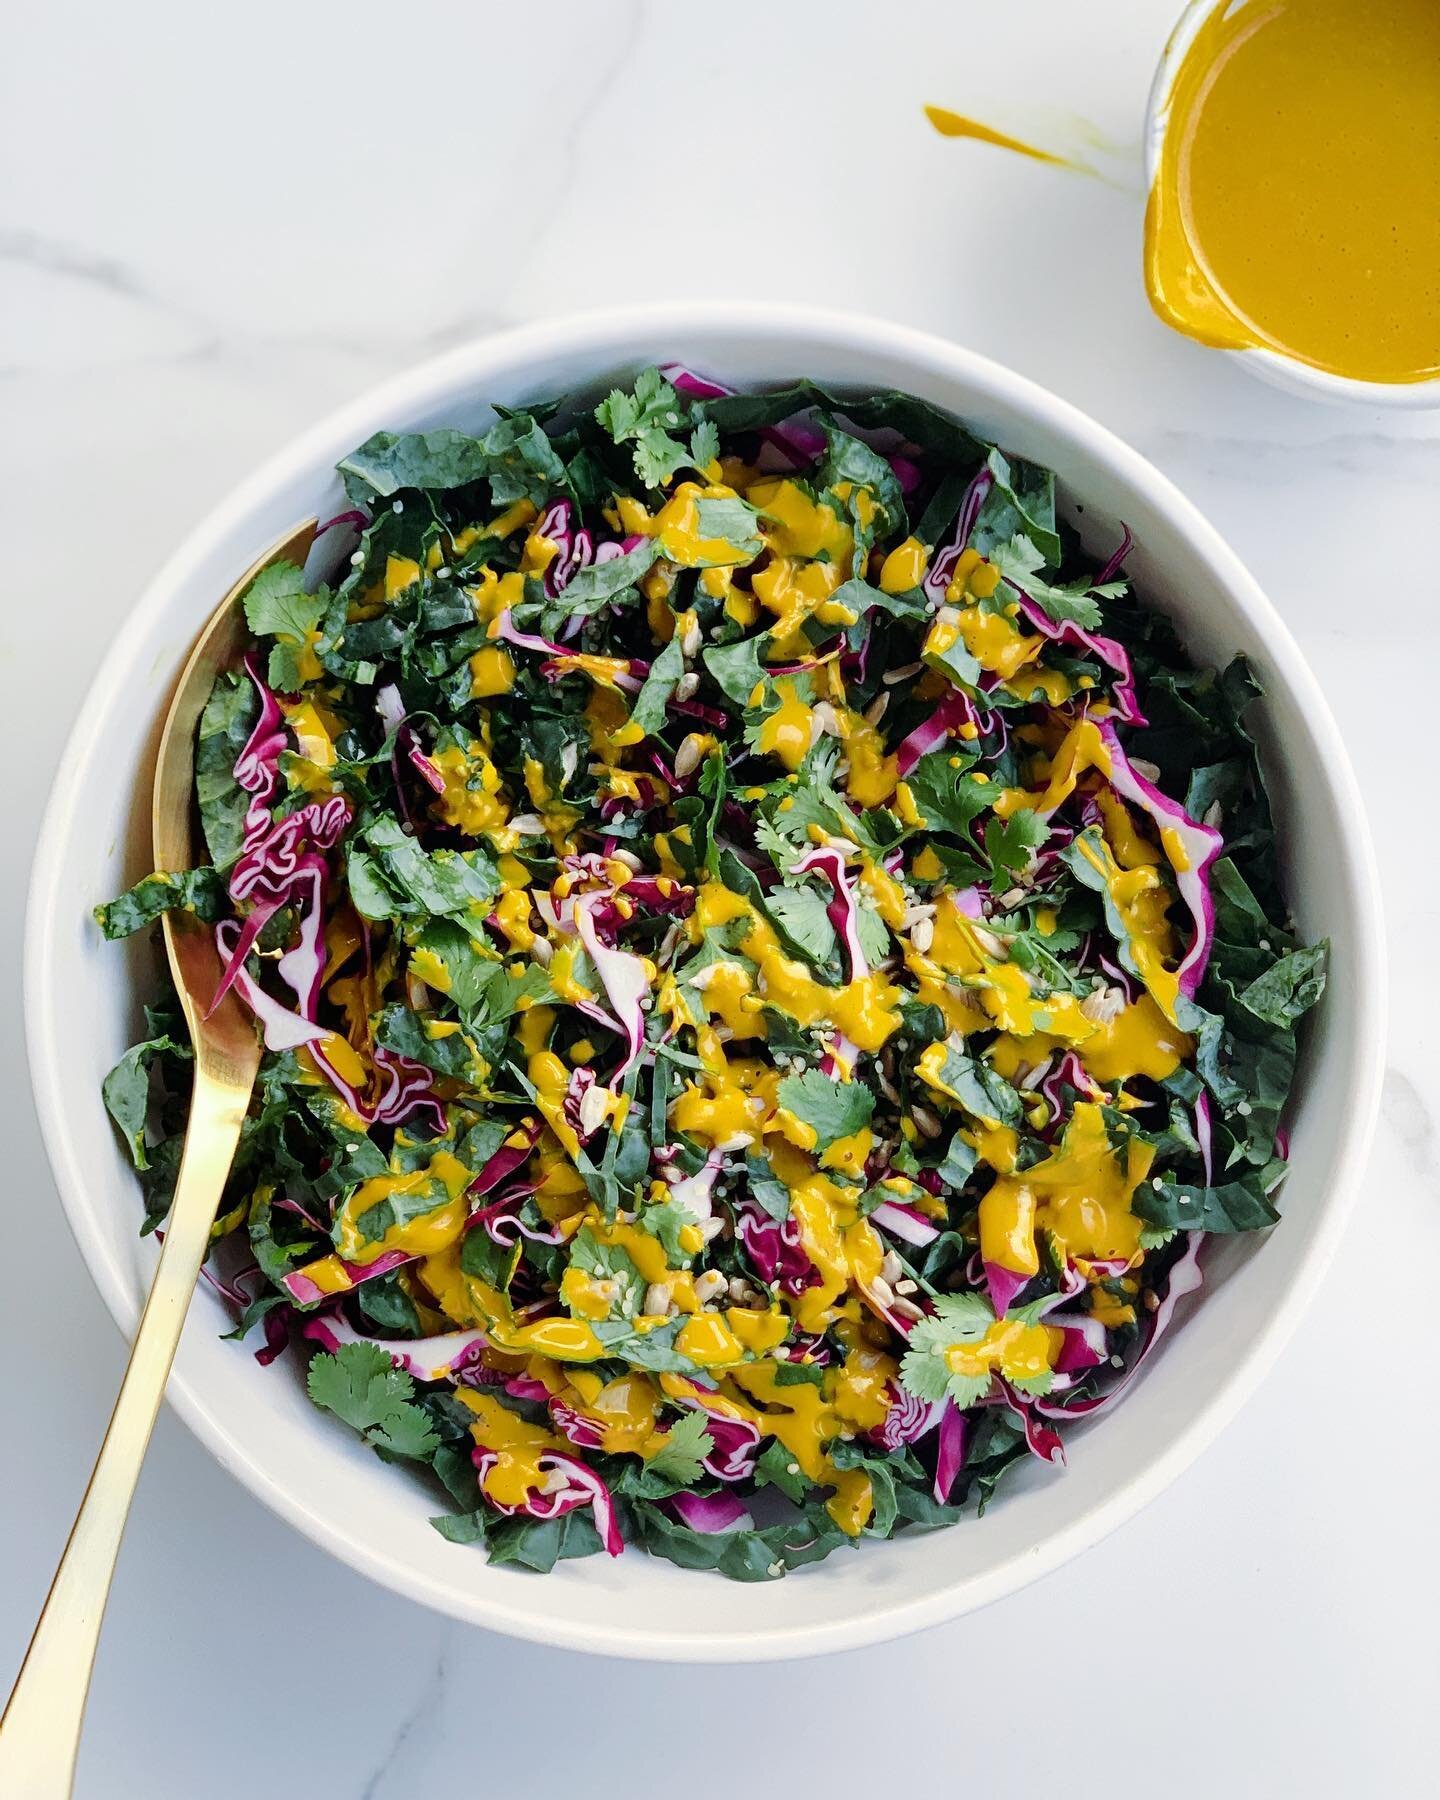 ✨Nouvelle recette en ligne✨

👉🏻 Salade detox chou kale et chou rouge &amp; sa vinaigrette cr&eacute;meuse au curcuma.

Quoi de mieux qu&rsquo;une bonne salade d&eacute;toxifiante pour se remettre des abus du we du Super Bowl 🏈? Le chou fris&eacute